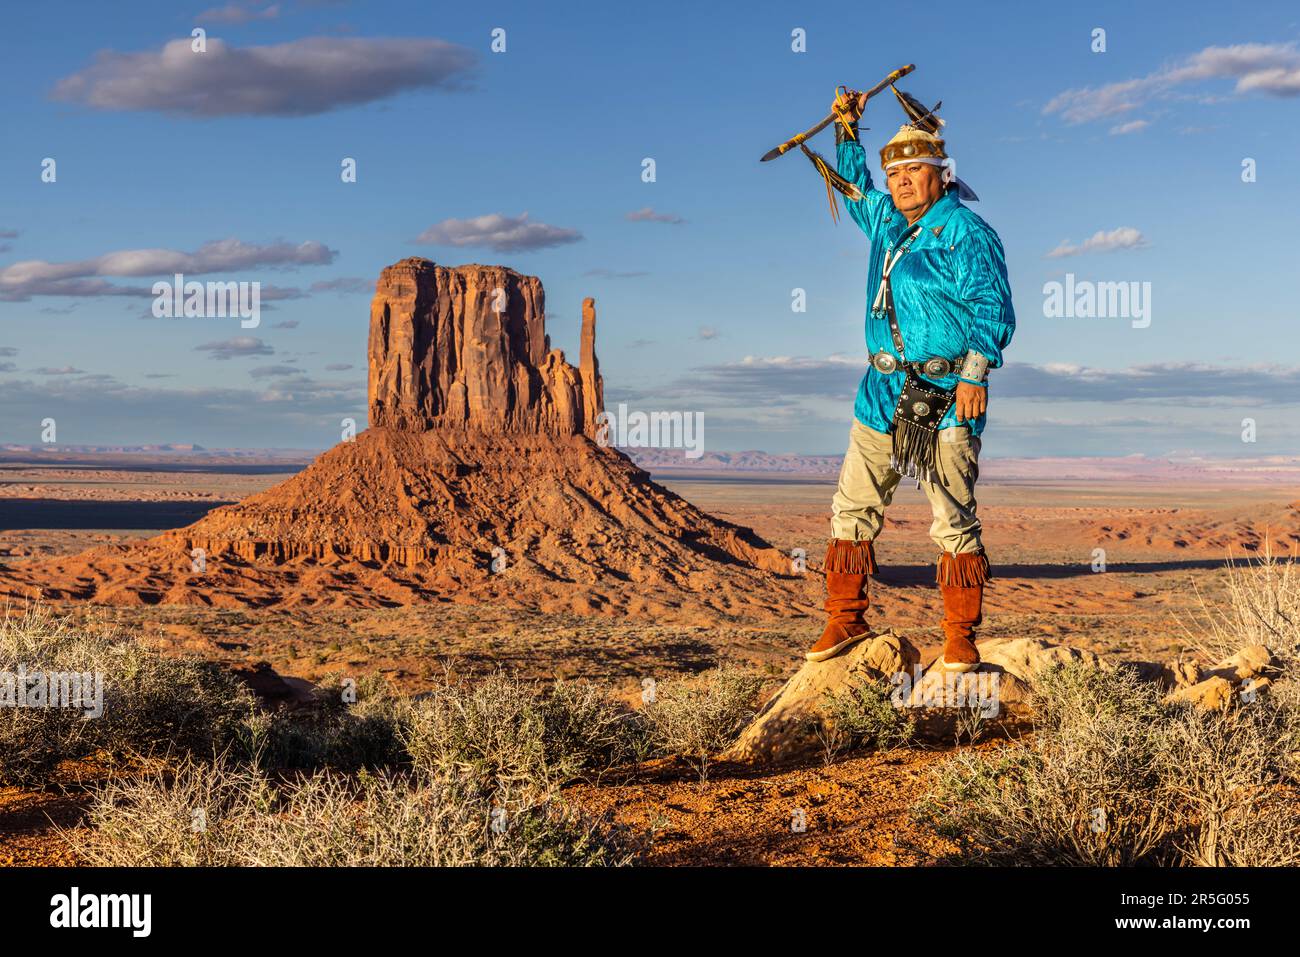 Guerrier américain indien Navajo avec lance au Monument Valley Navajo Tribal Park, Arizona, États-Unis Banque D'Images